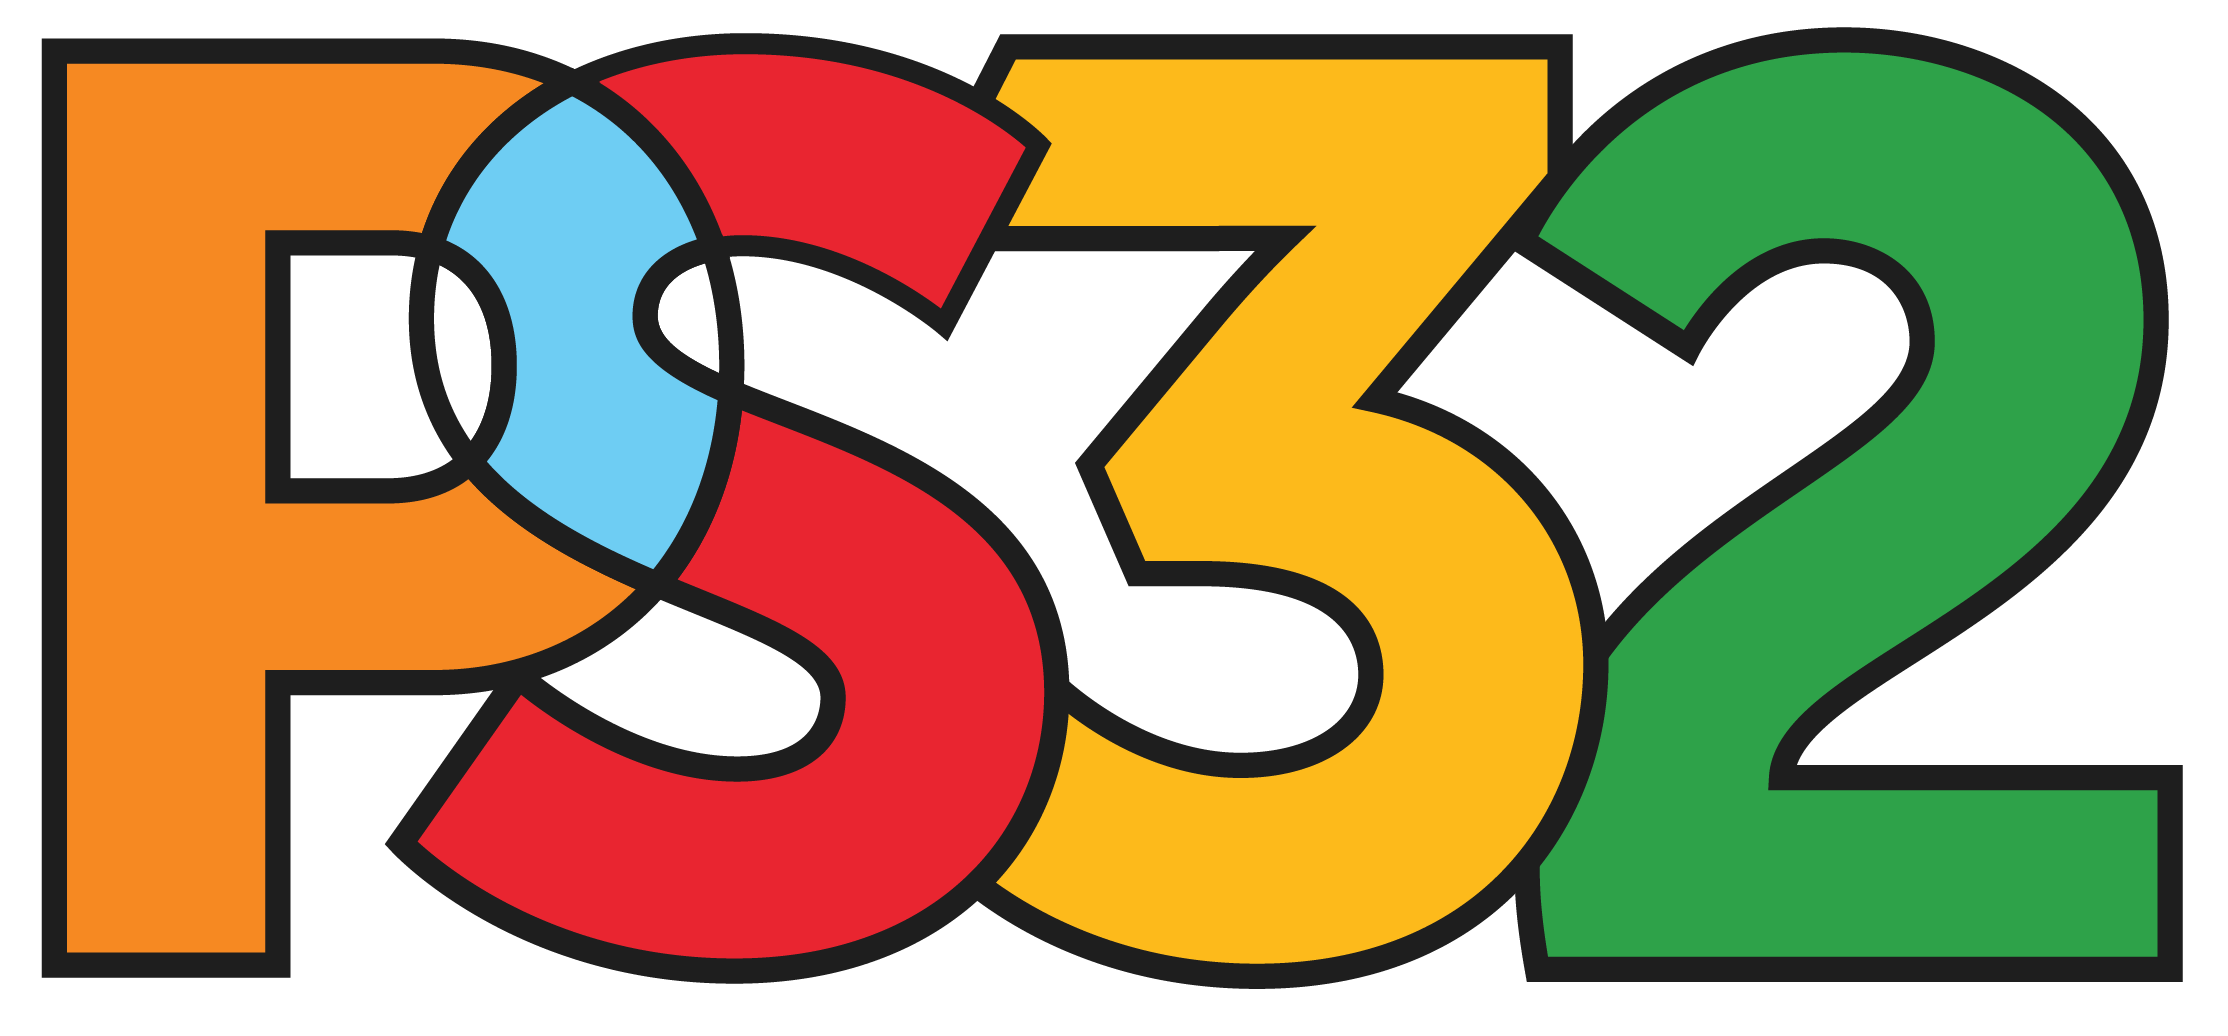 PS32